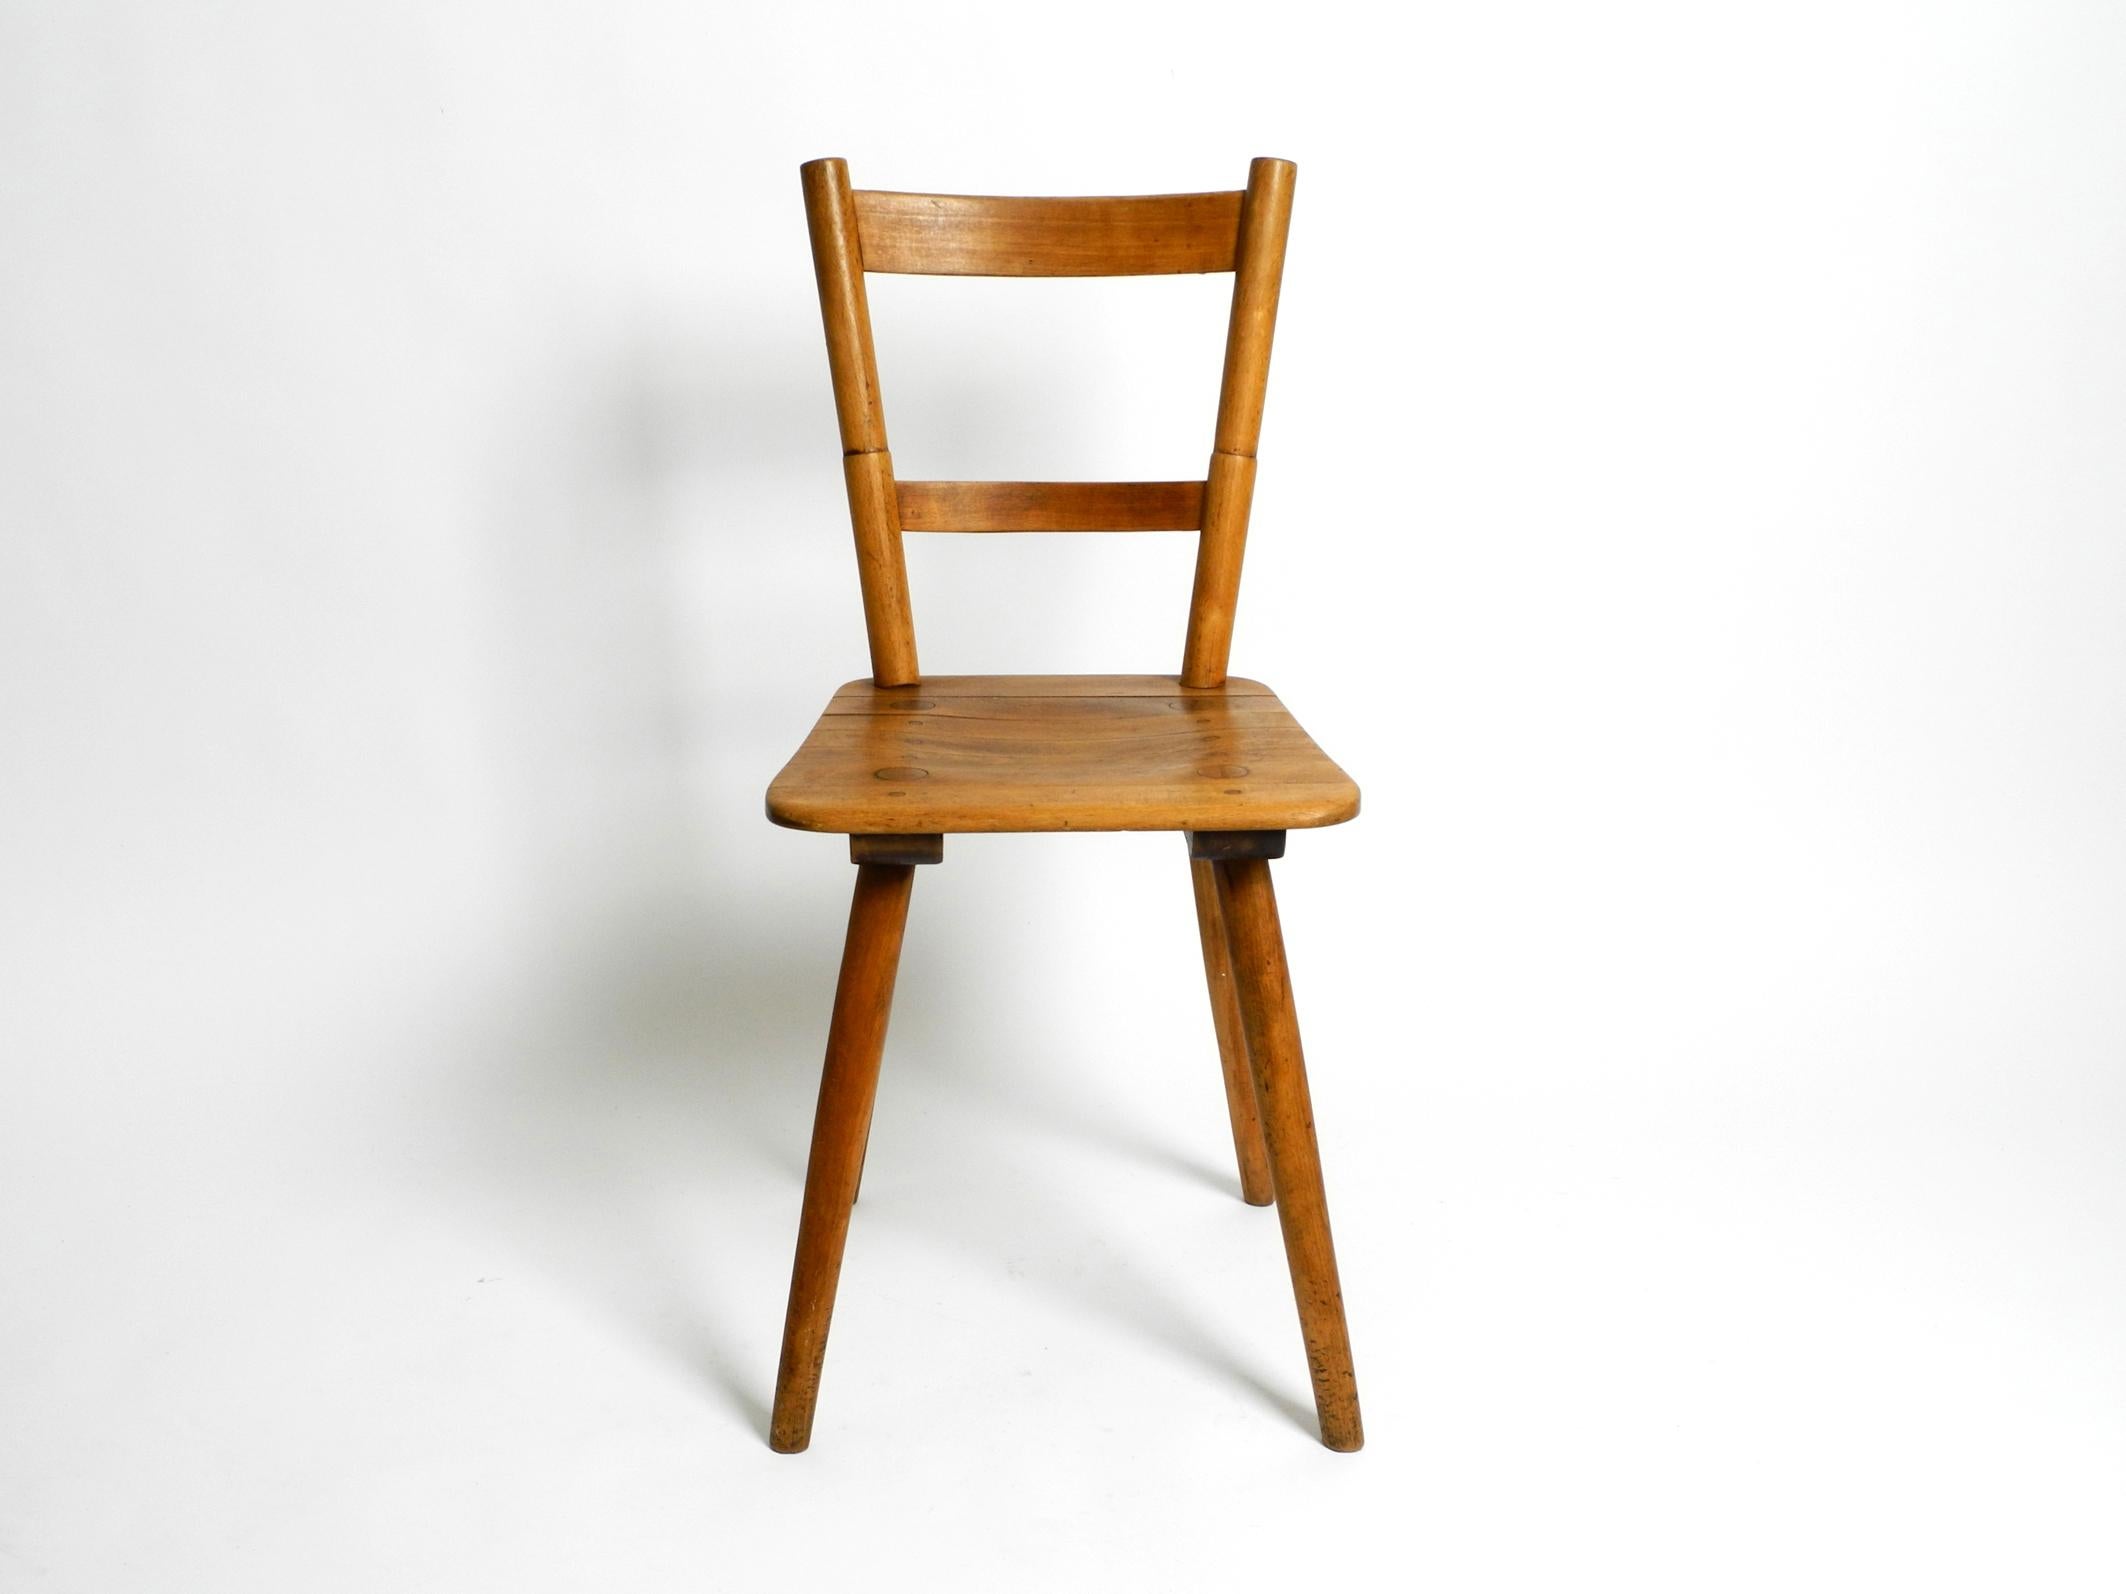 Original Tübinger Stuhl aus den 1930er Jahren von Prof. Adolf Gustav Schneck für Schäfer. Hergestellt in Deutschland.
Sitz aus Rotbuchenlatten. Alle Teile geklebt und eingesetzt. Keine Metallschrauben.
Der Tübinger Stuhl wurde jahrzehntelang von der